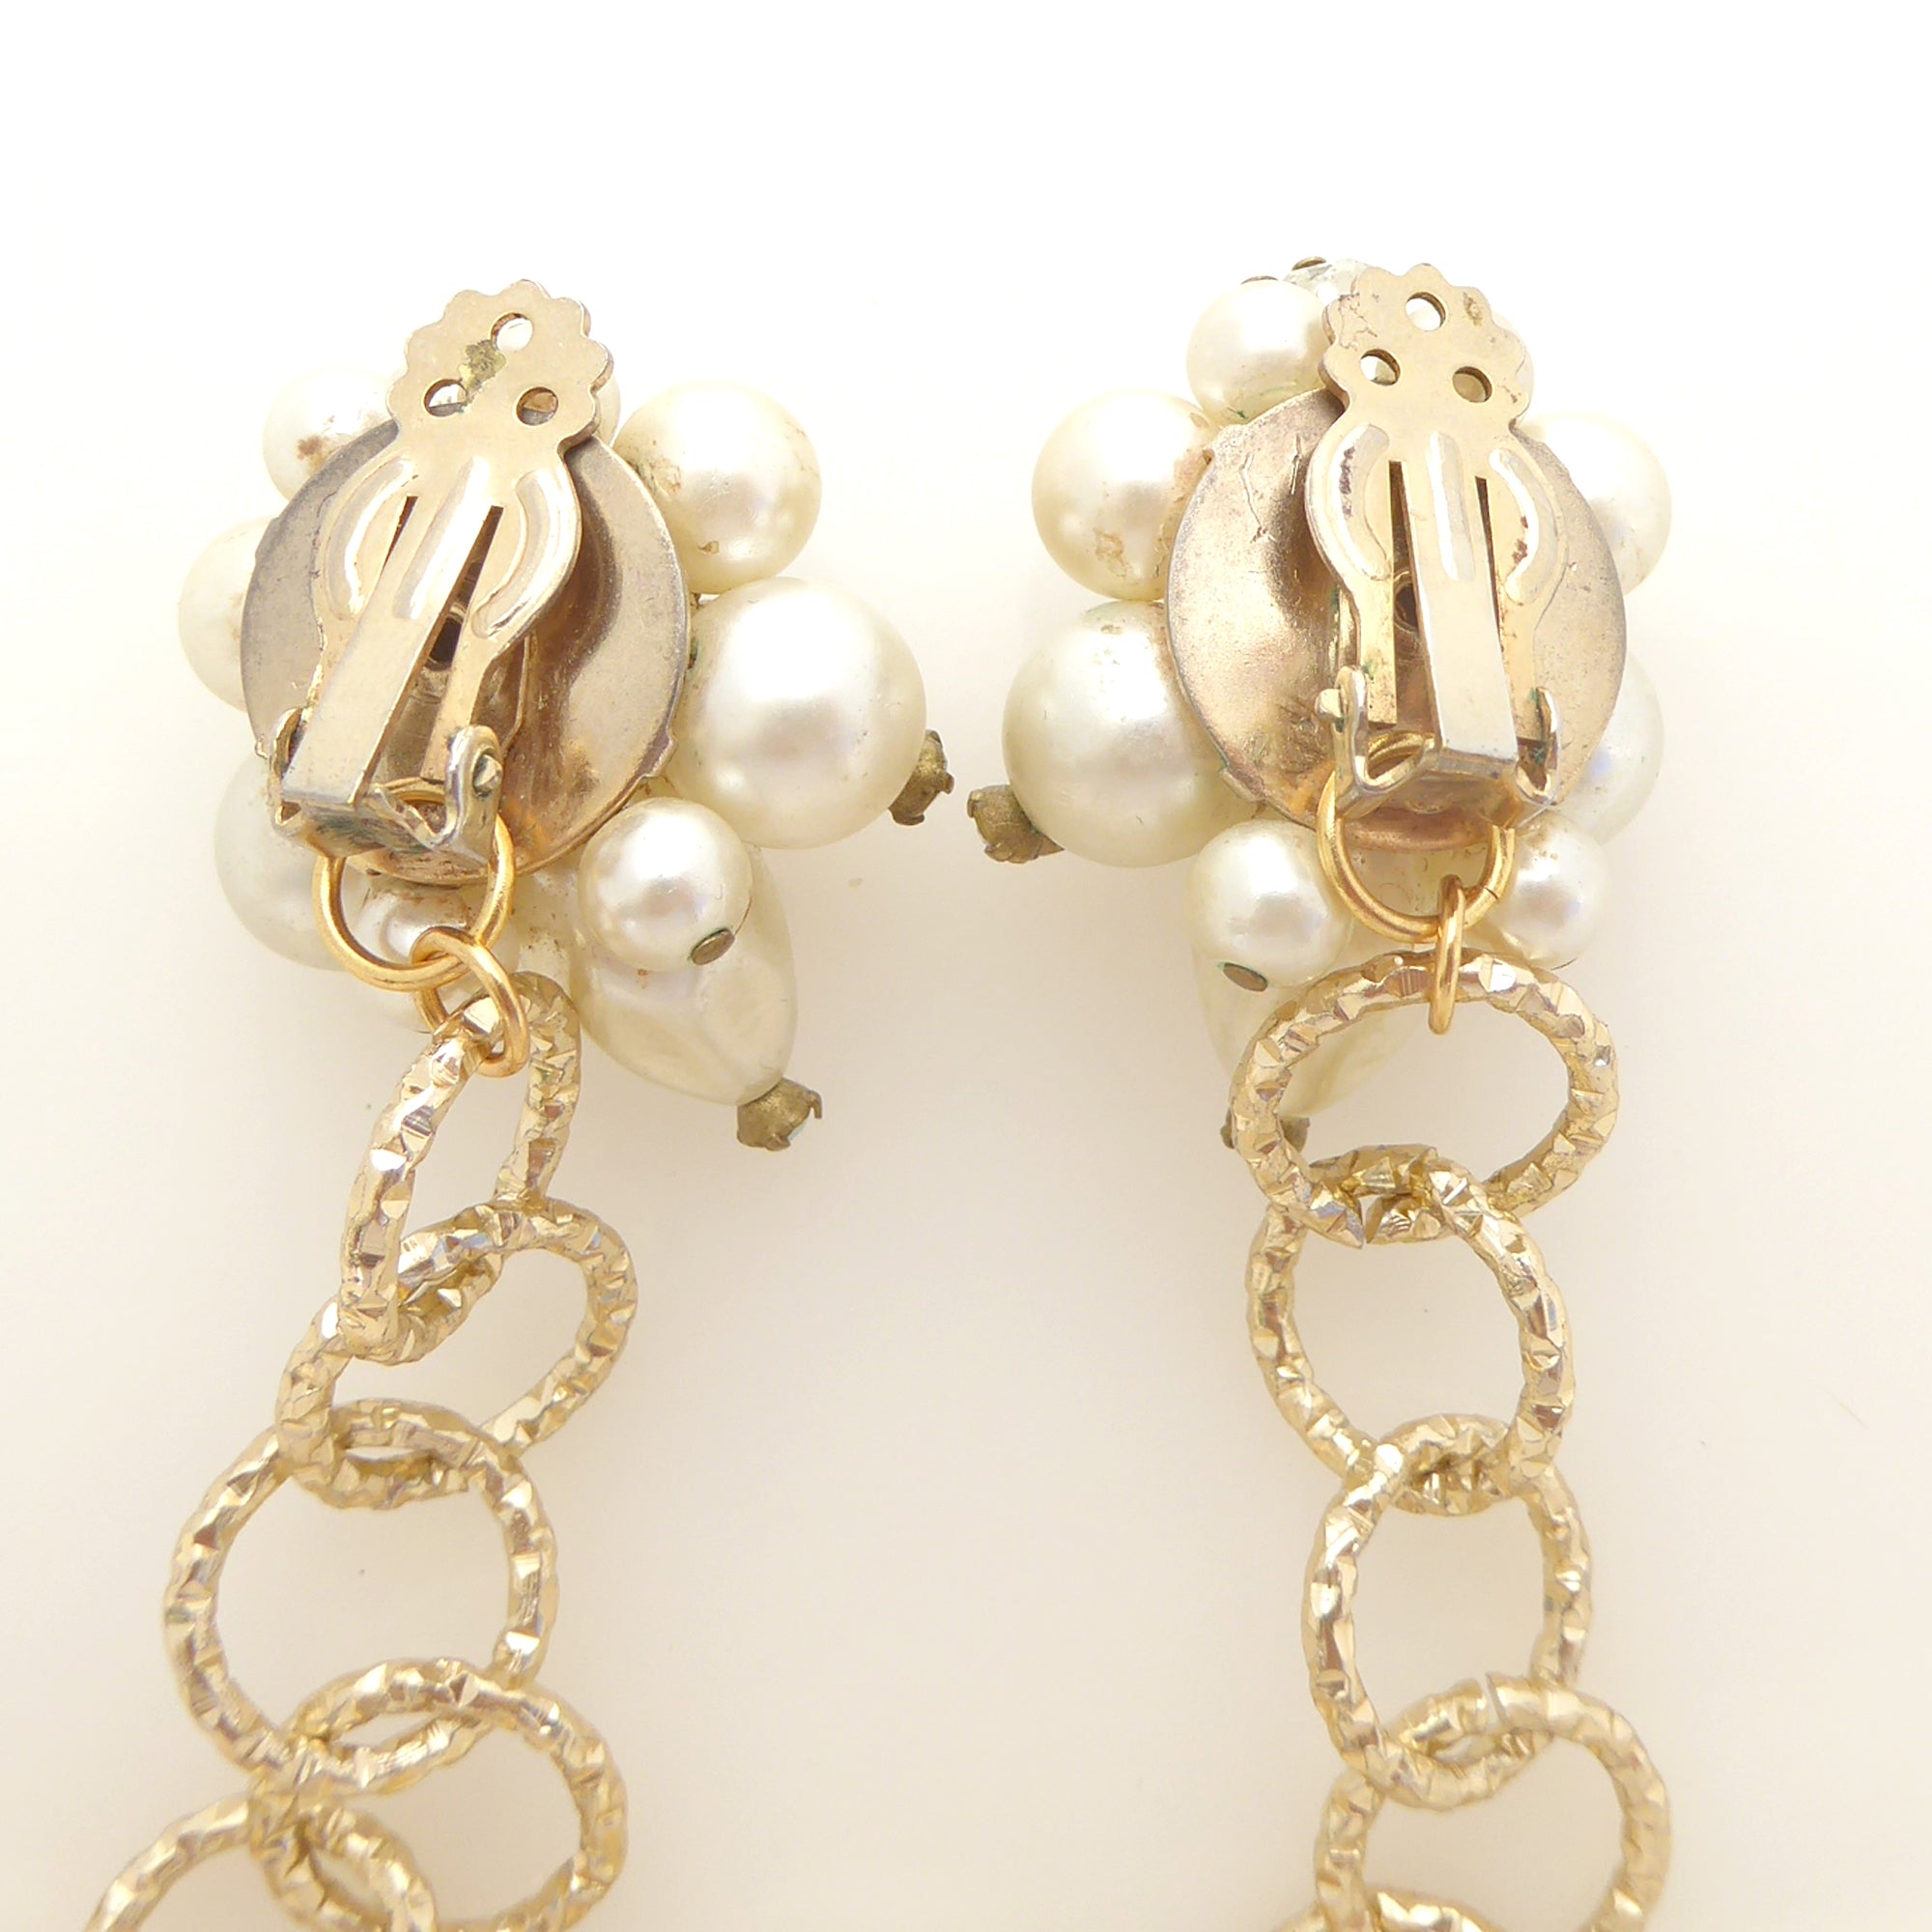 Pearl cluster earrings